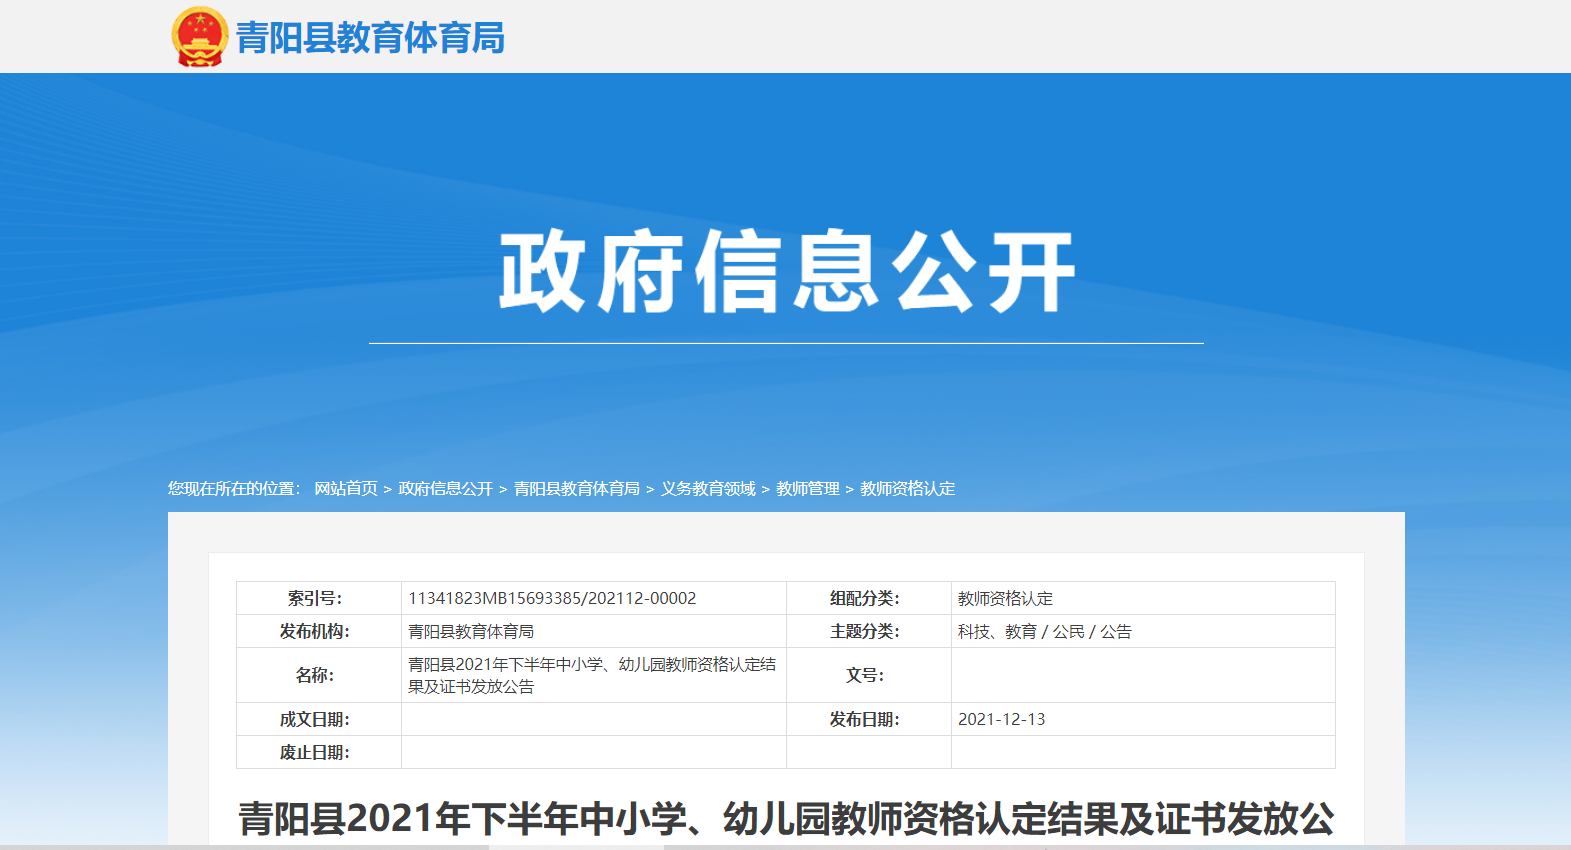 2021下半年安徽池州青阳县教师资格证书发放公告